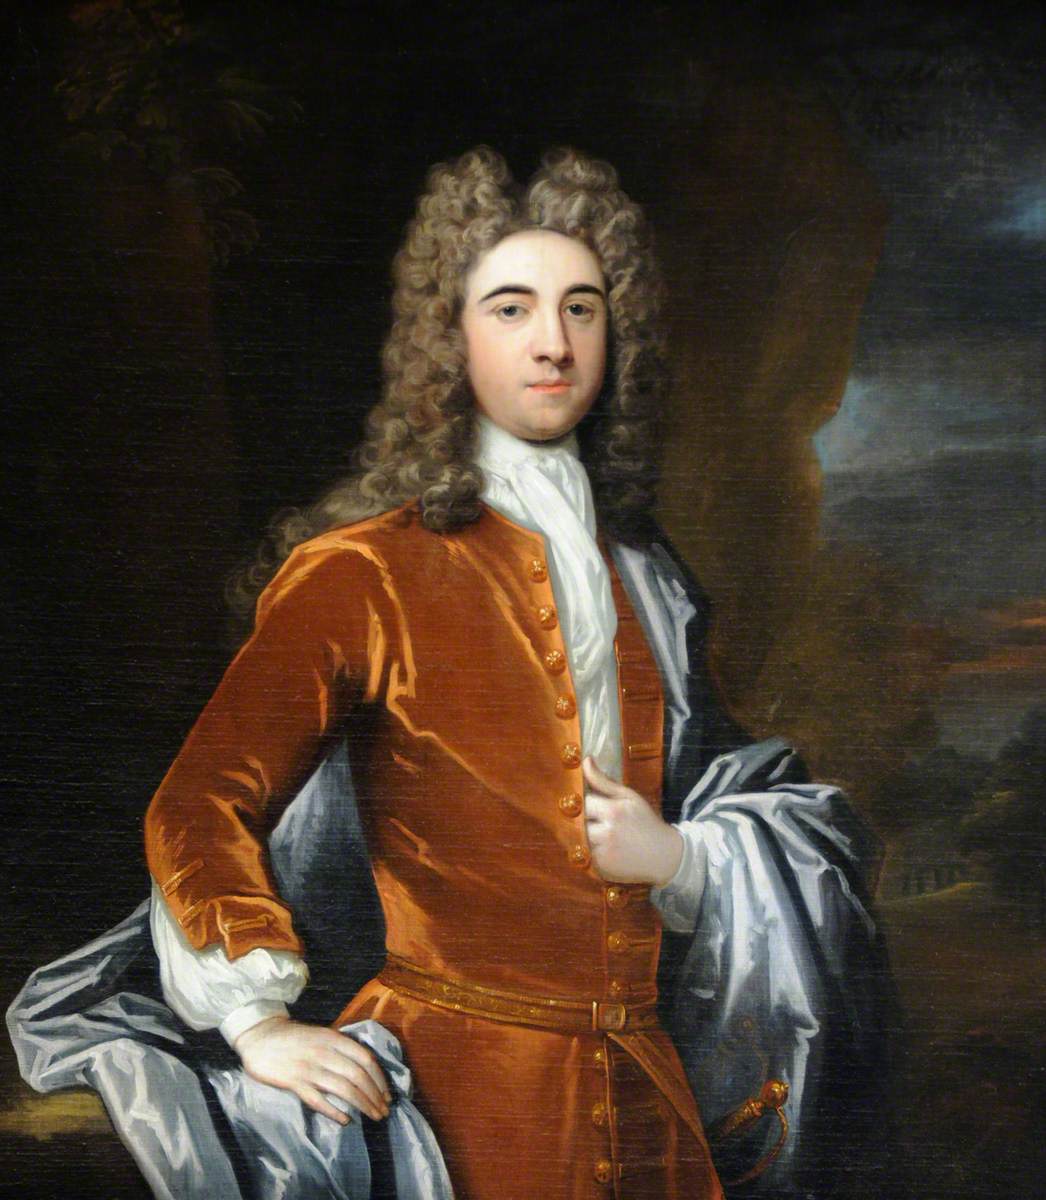 Sir John Harpur (1680–1741), 4th Bt